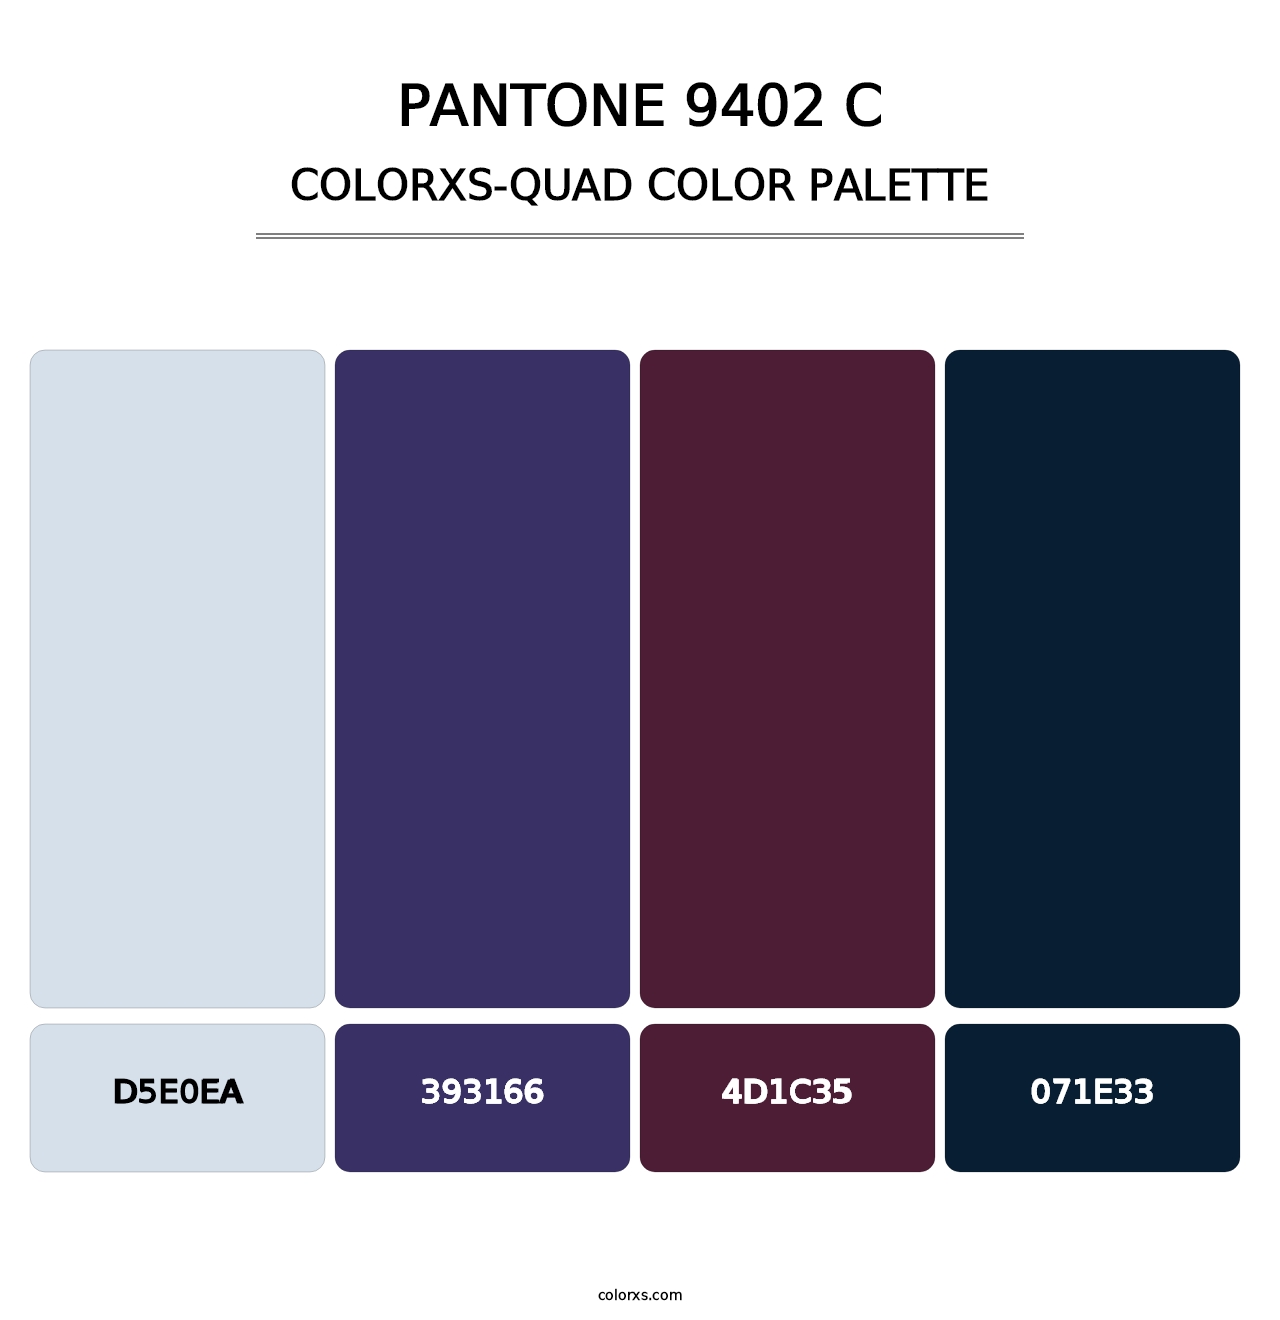 PANTONE 9402 C - Colorxs Quad Palette